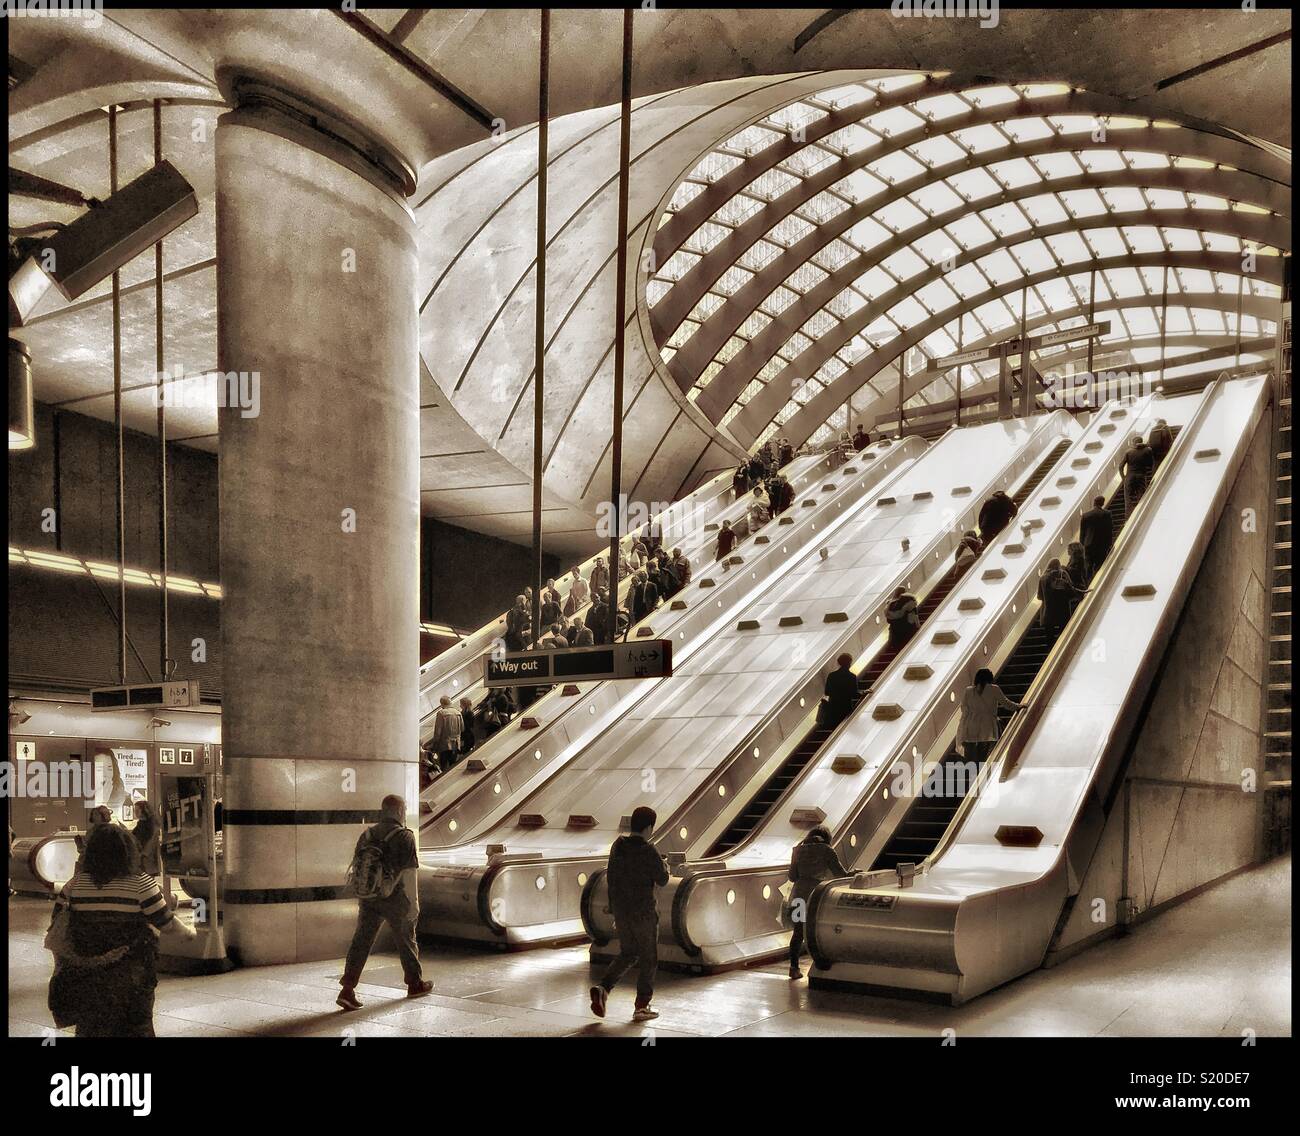 Le scale mobili e i pendolari alla stazione metropolitana Canary Wharf a Londra, Inghilterra. La stazione della metropolitana si trova sulla Jubilee Line e fa parte della Docklands Light Railway. Credito foto - © COLIN HOSKINS. Foto Stock